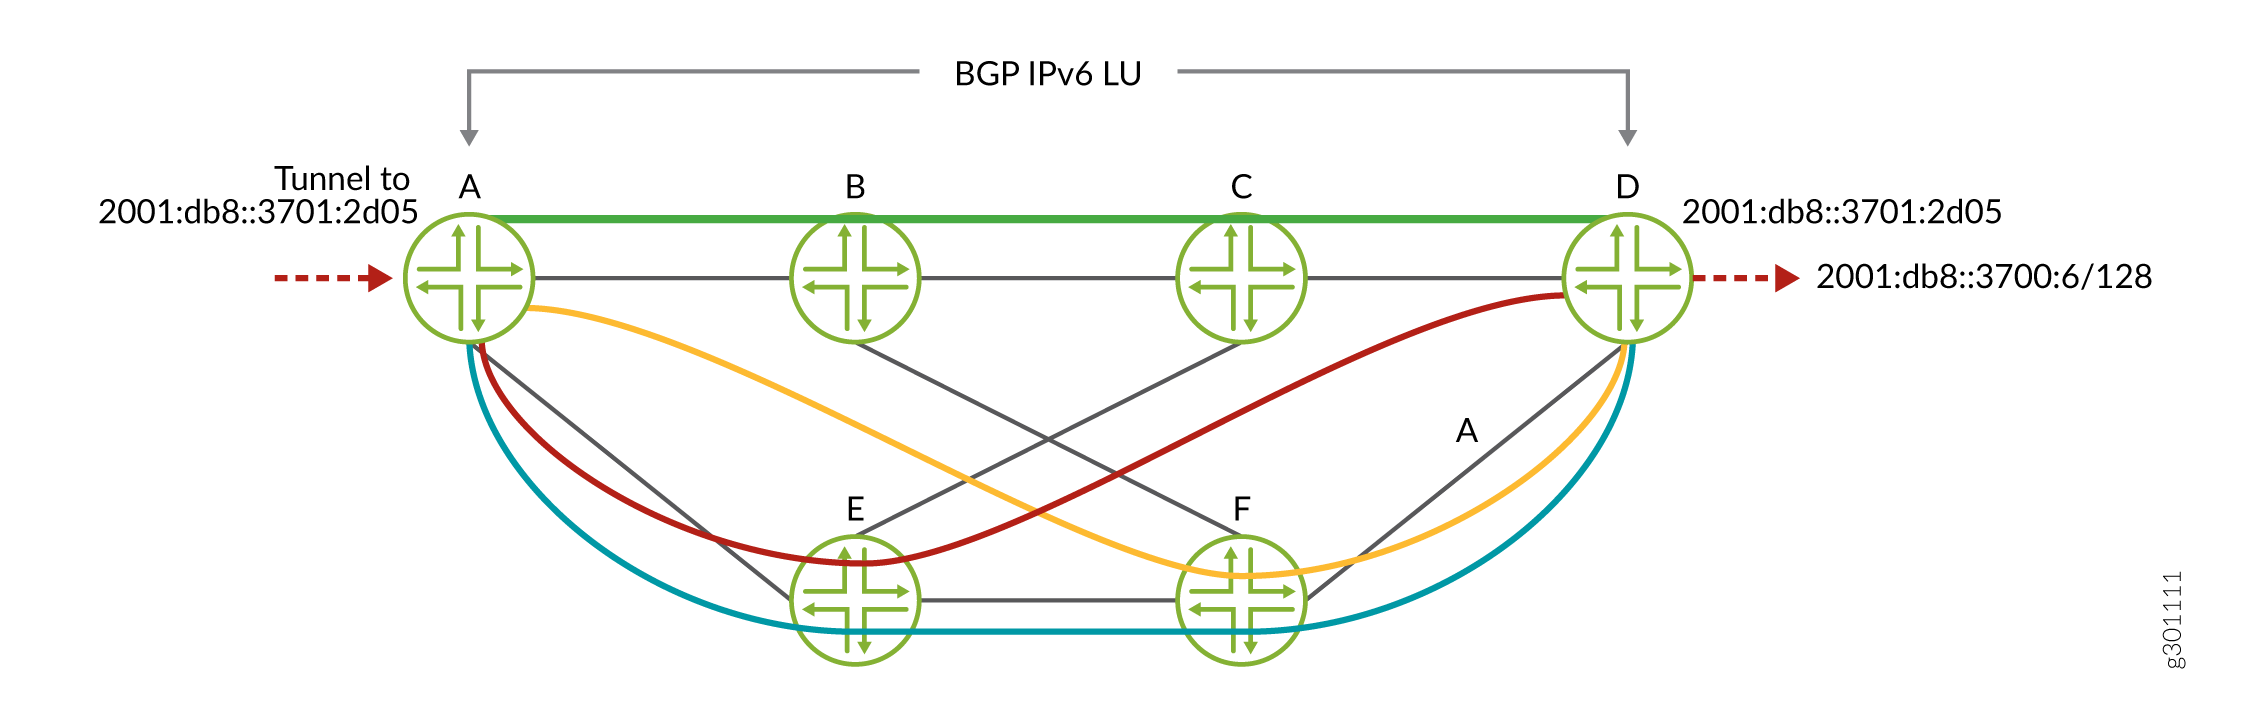 BGP IPv6 LU sur couleur IPv6 SR-TE